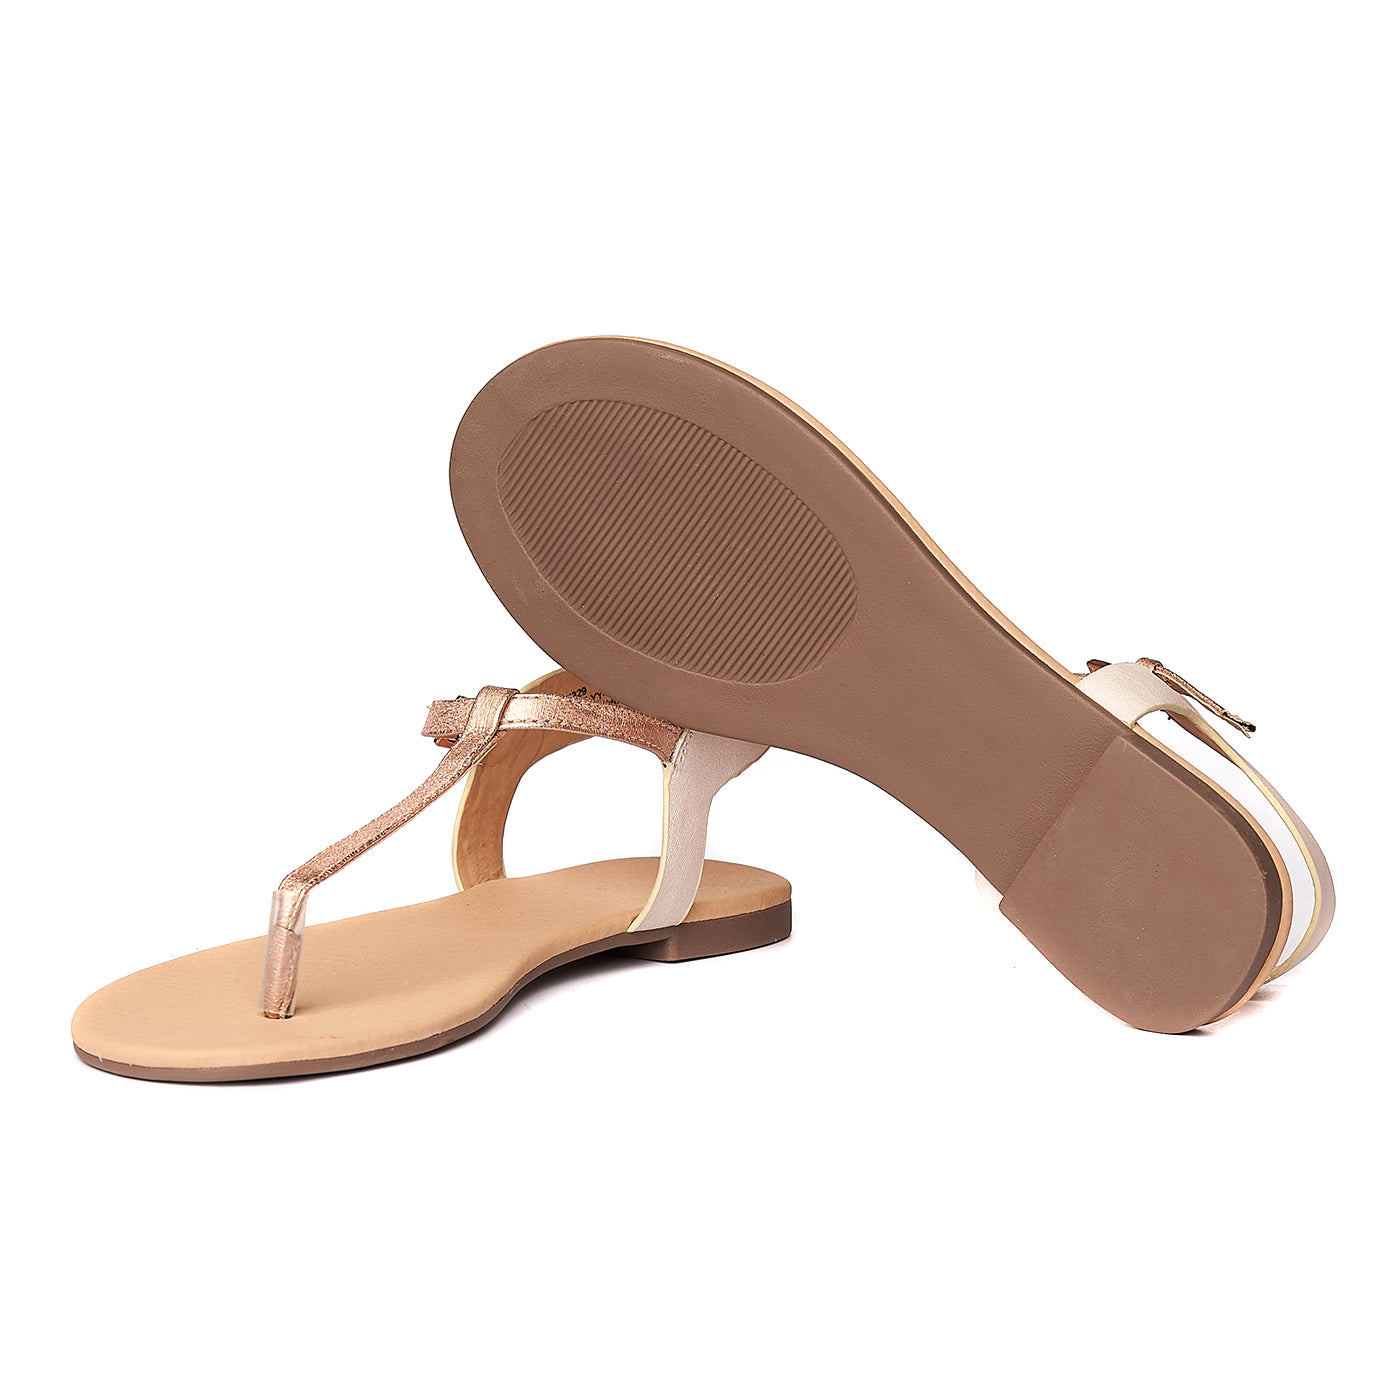 Sandale nude/auriu ZLN 0227 - Zellini